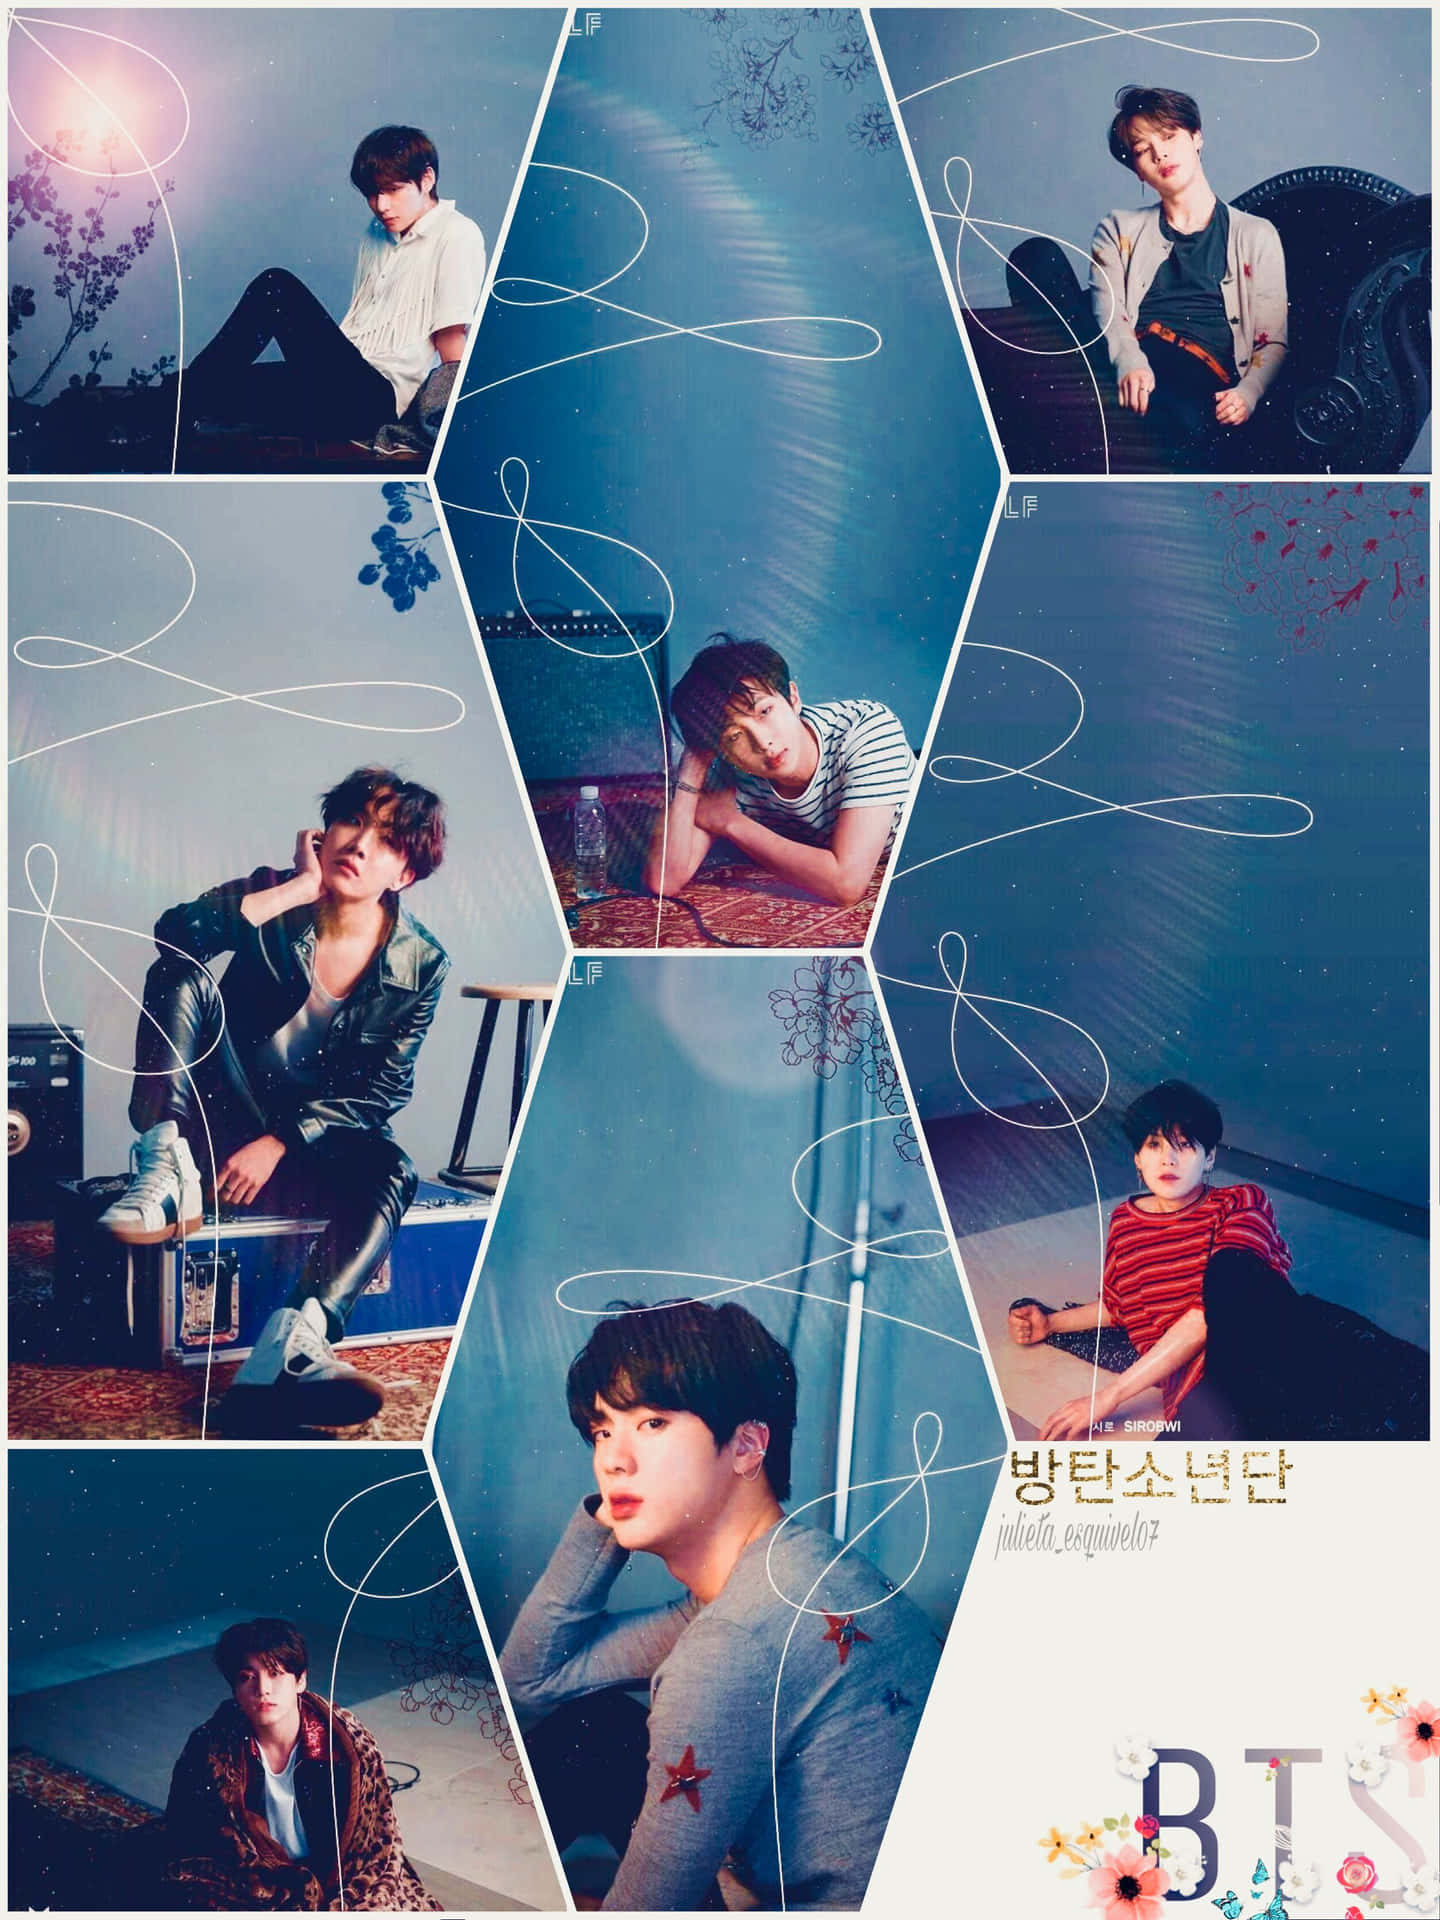 A Cute Kpop Fan Enjoying Their Music Wallpaper